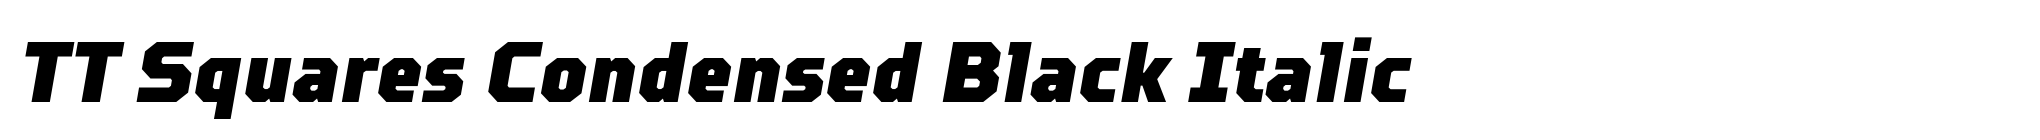 TT Squares Condensed Black Italic image